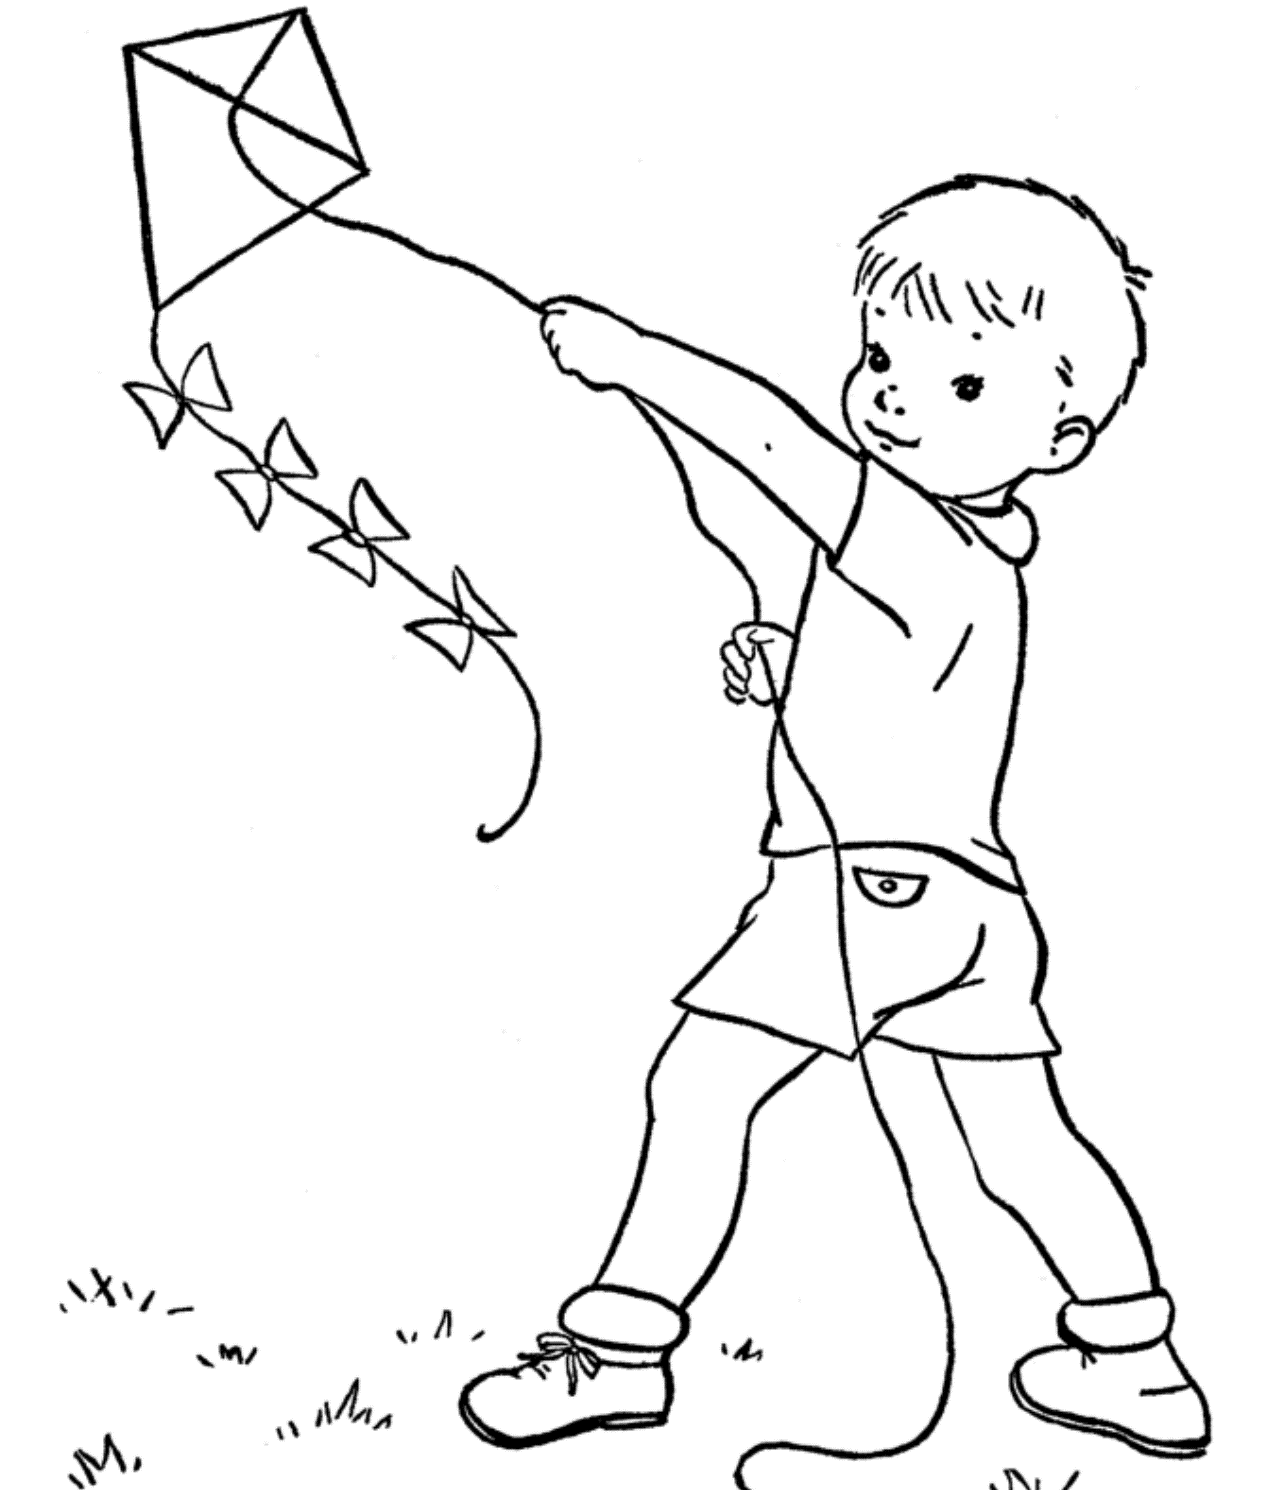 Нарисуй картинку играть. Воздушный змей раскраска для детей. Раскраска мальчик с воздушным змеем. Мальчик запускает воздушного змея. Мальчик запускает воздушного змея рисунок.